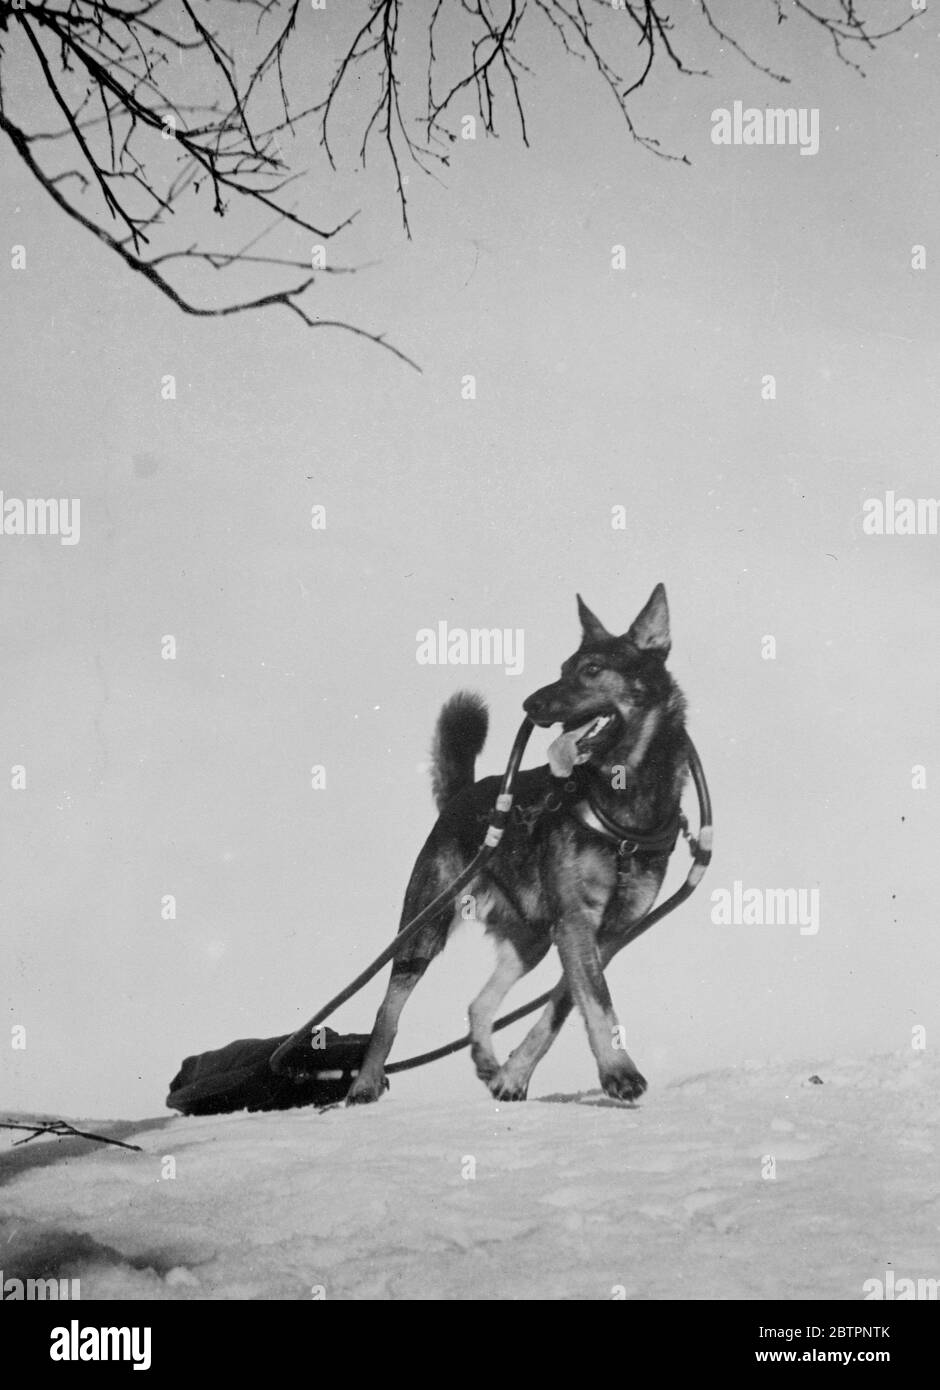 « Fang blanc ». Les oreilles sont alertes et la queue s'envolte bravement, Athos, magnifique chien de traîneau, donne vie. Le héros canin de Jack London du Nord gelé. Athos vient de couvrir 12 miles avec son petit traîneau, qui est chargé de 66 livres. Pour cette belle réalisation Athos a été récompensé premier prix de sa classe aux championnats de ski de Solleftea, dans le nord de la Suède. 13 février 1938 Banque D'Images